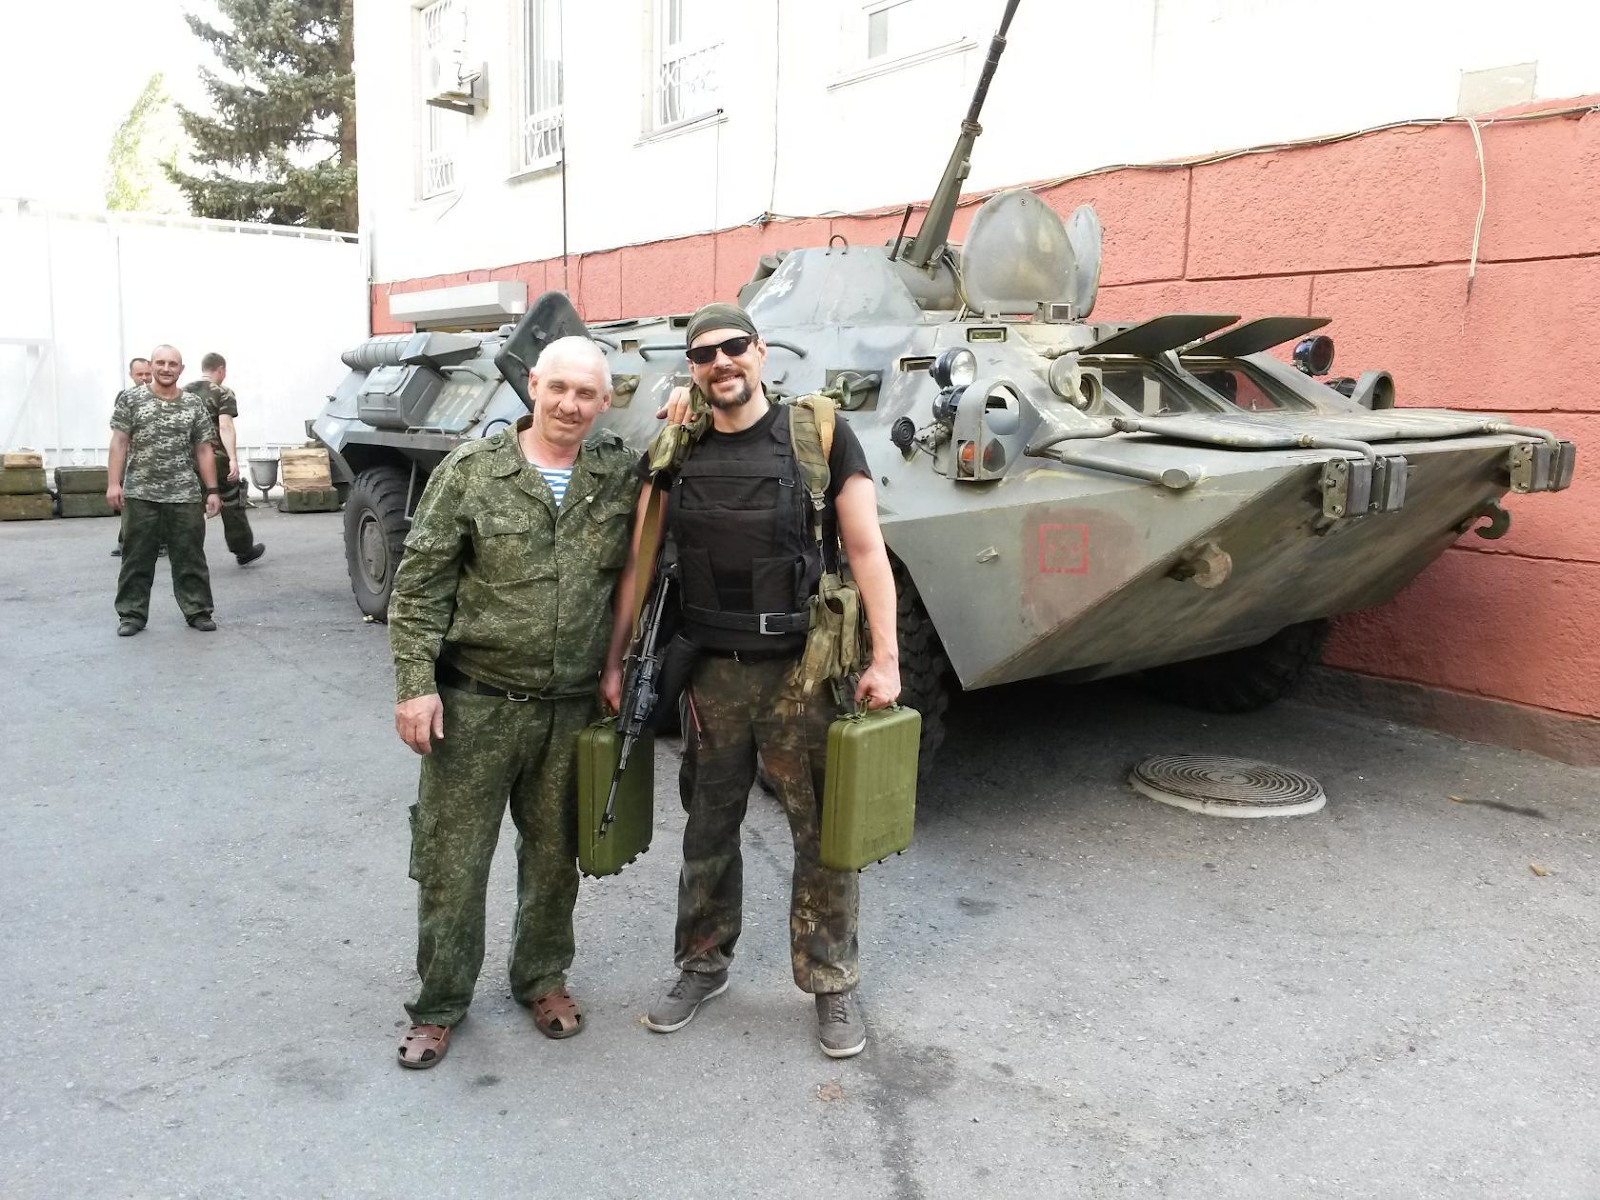 Одне з фото Барбашов підписав так: “Июль 2014. Луганск. Отряд КГБ. Минометчик”. Фото зі сторінки в "Однокласниках"